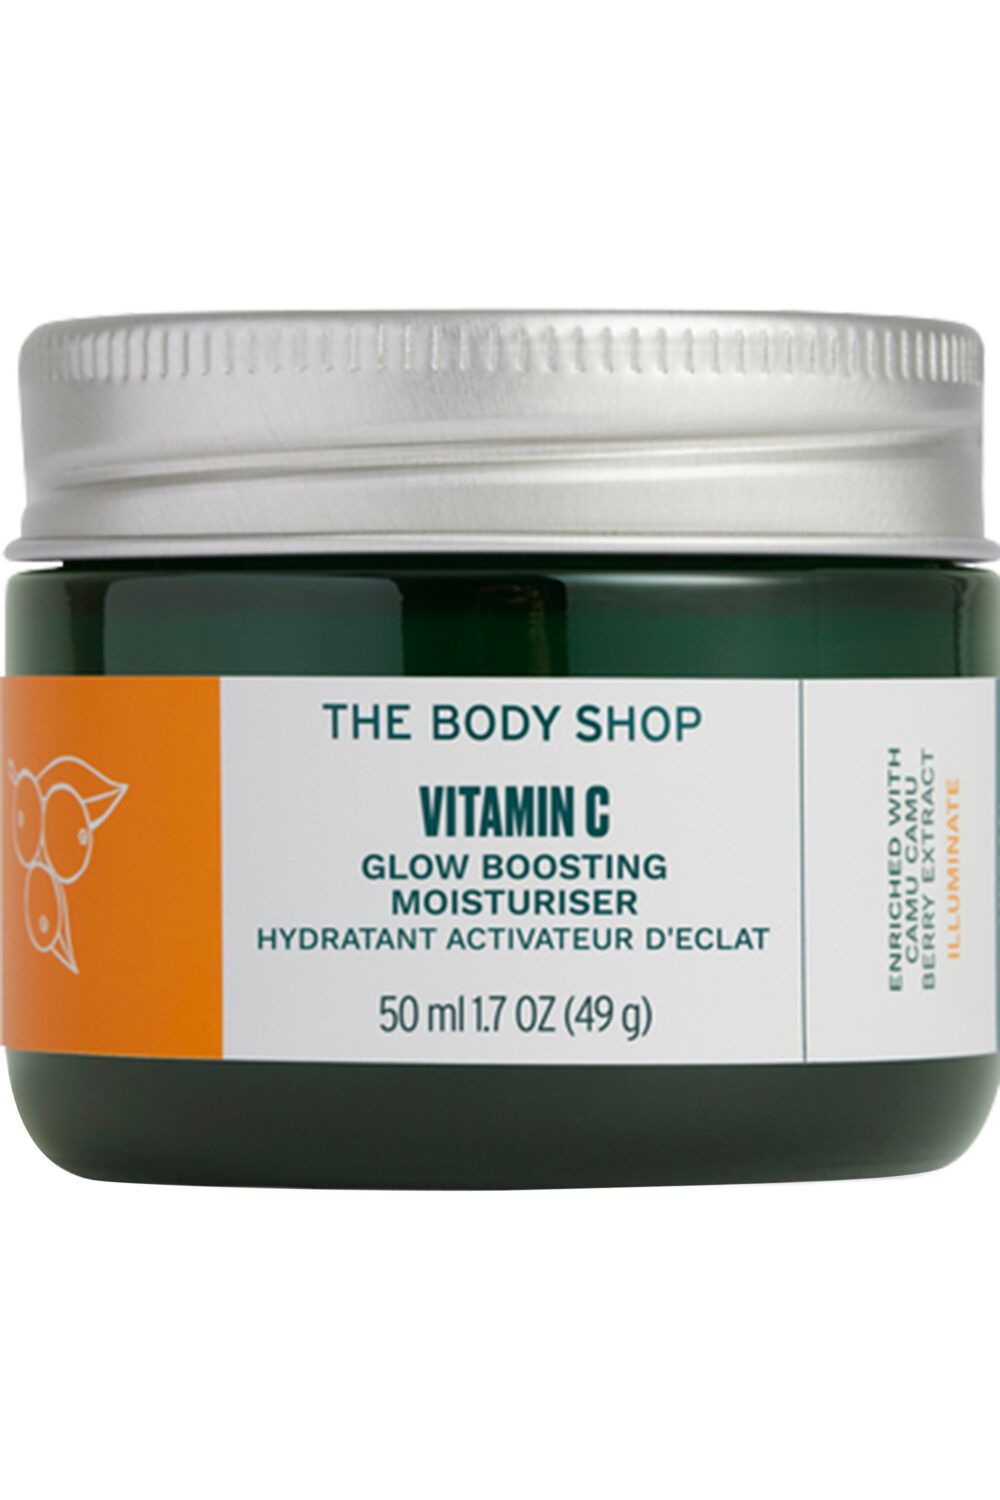 The Body Shop - Soin hydratant activateur d'éclat à la vitamine C